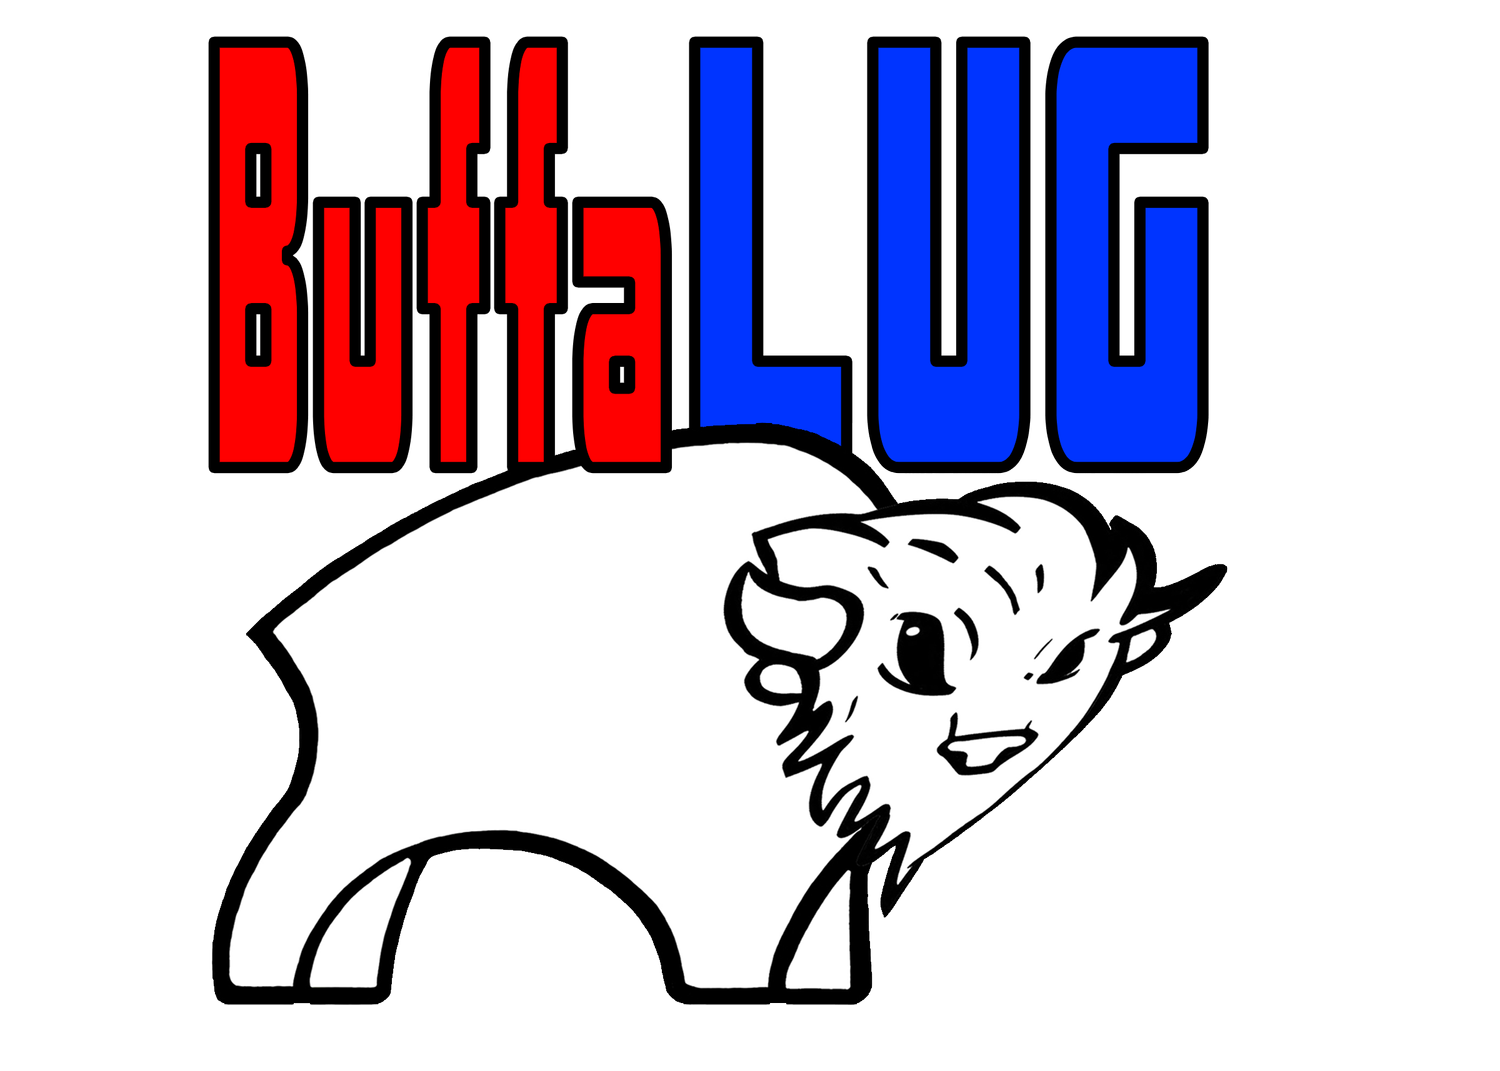 BuffaLUG